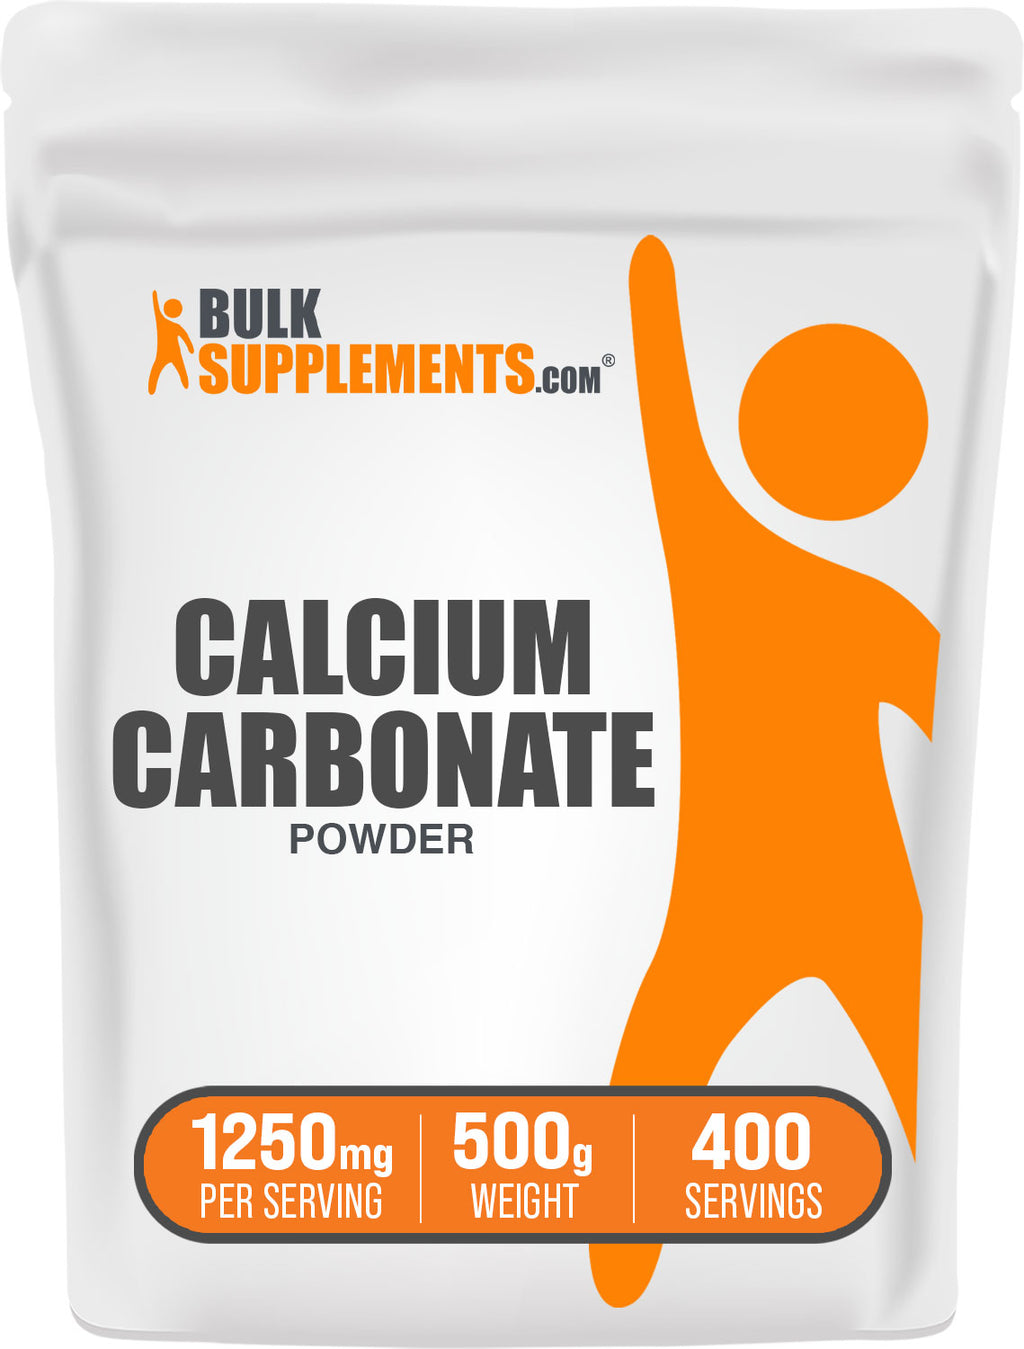 What is Calcium Carbonate? 